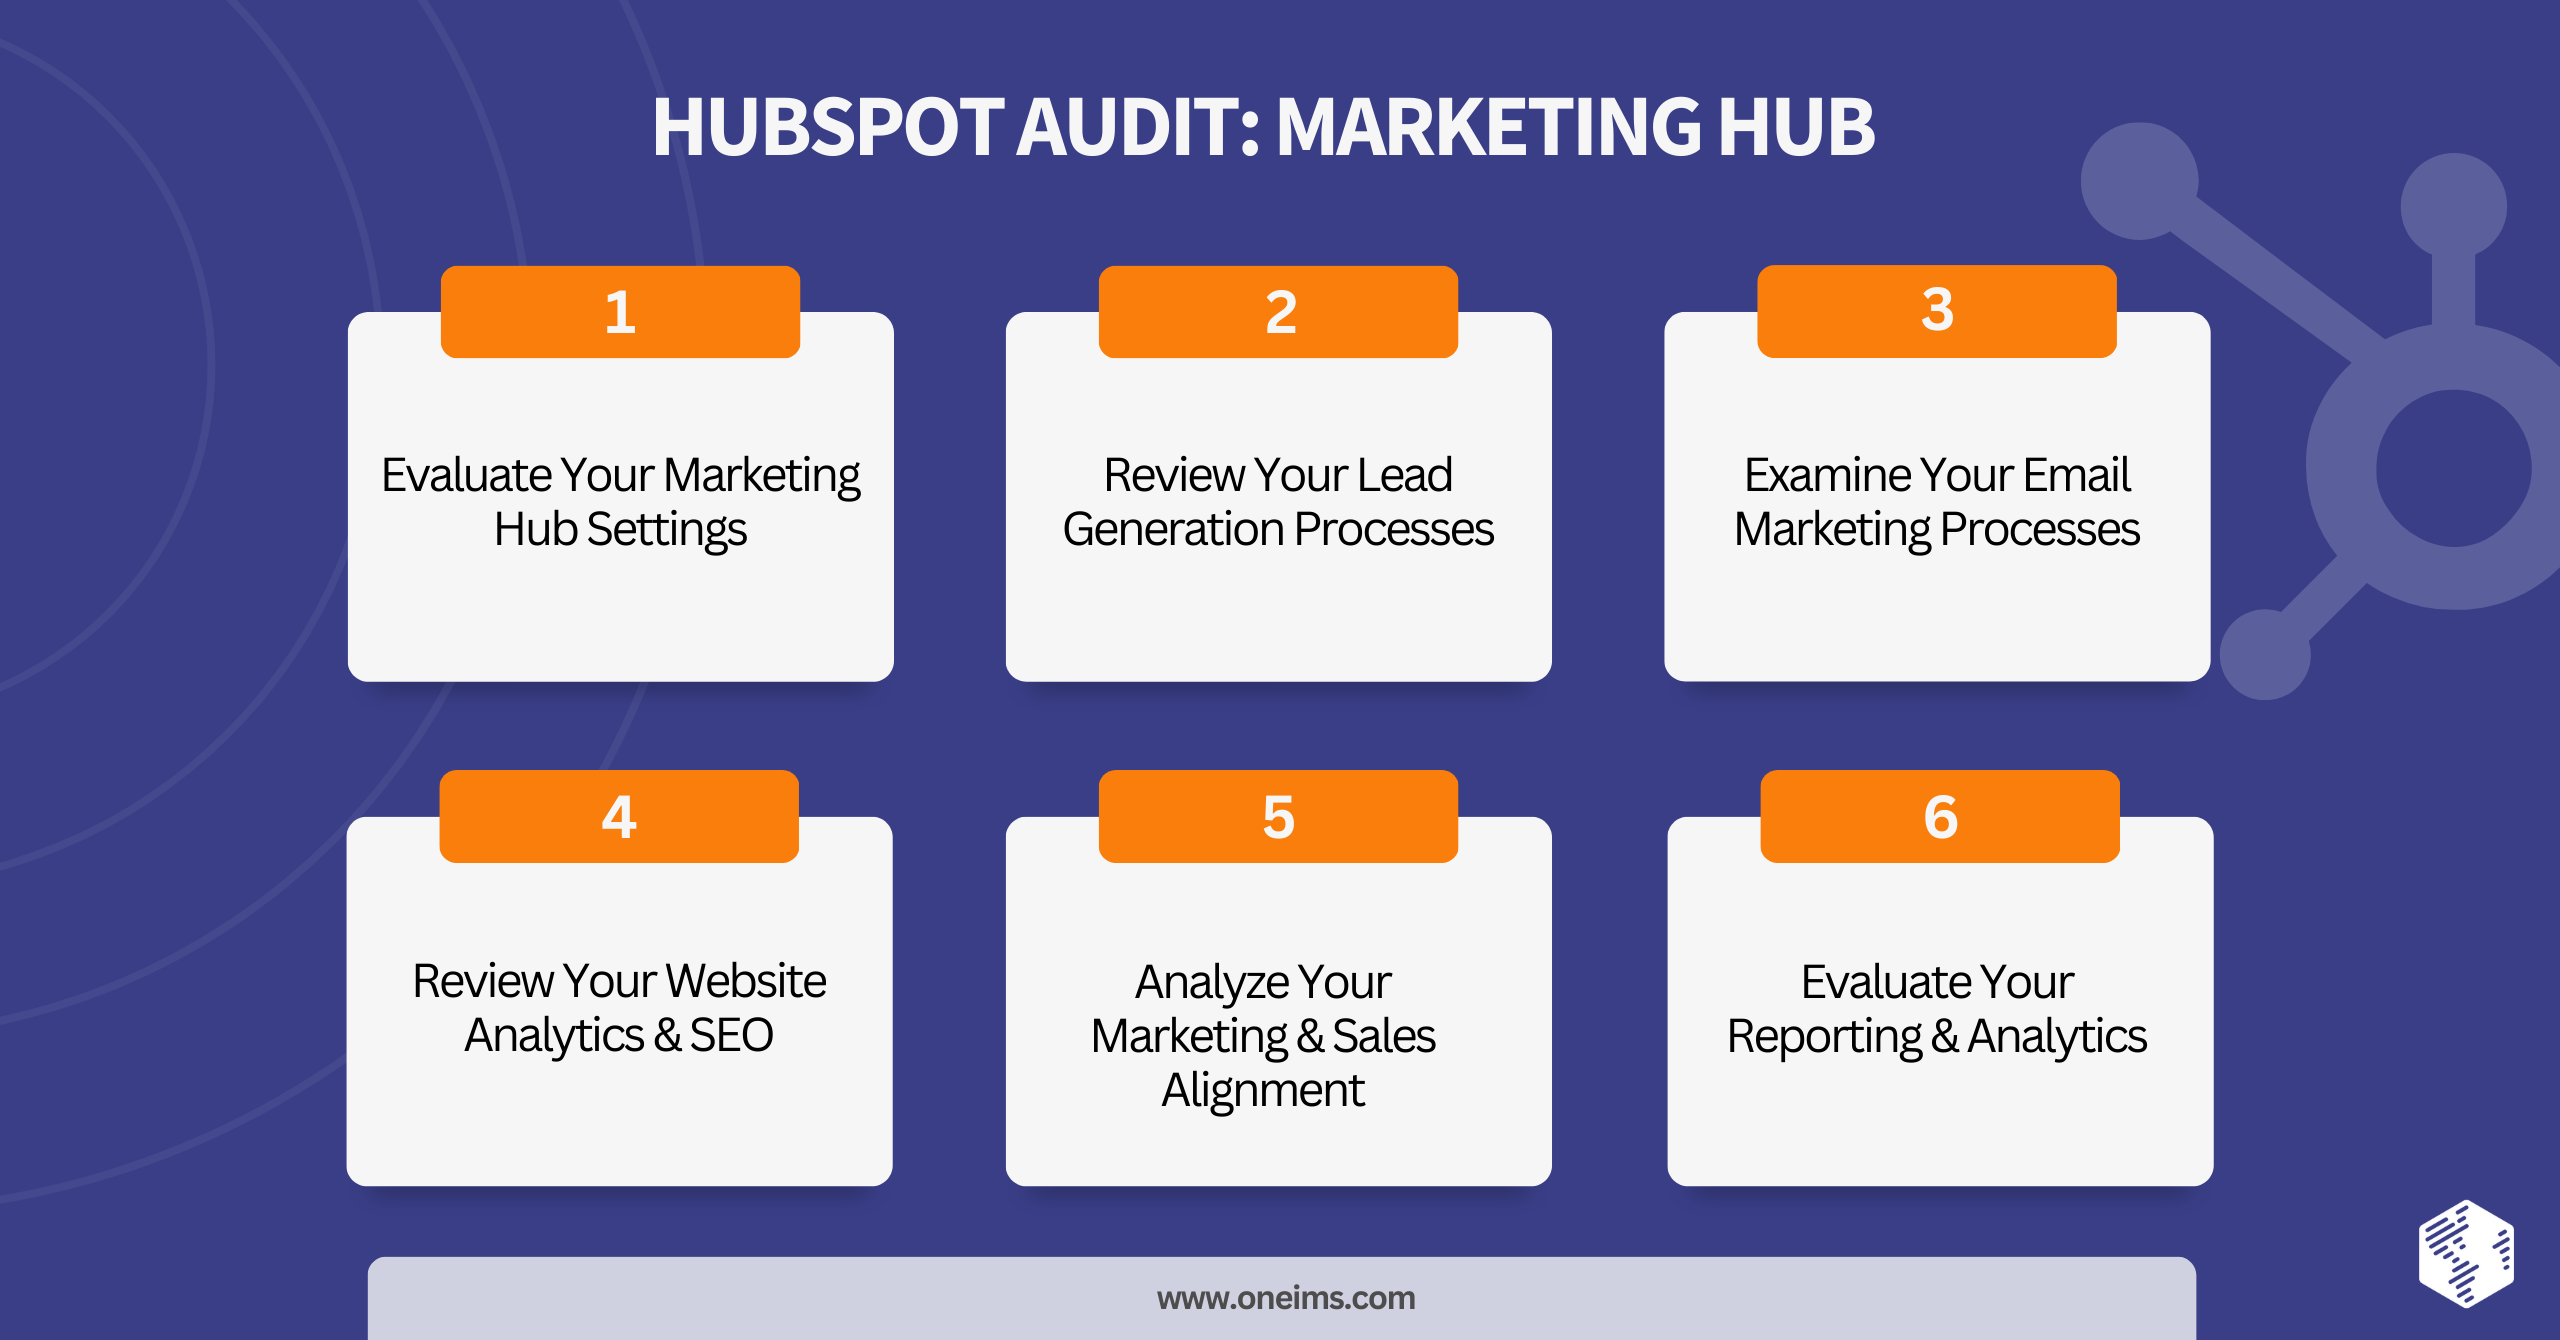 HubSpot Audit: Marketing Hub